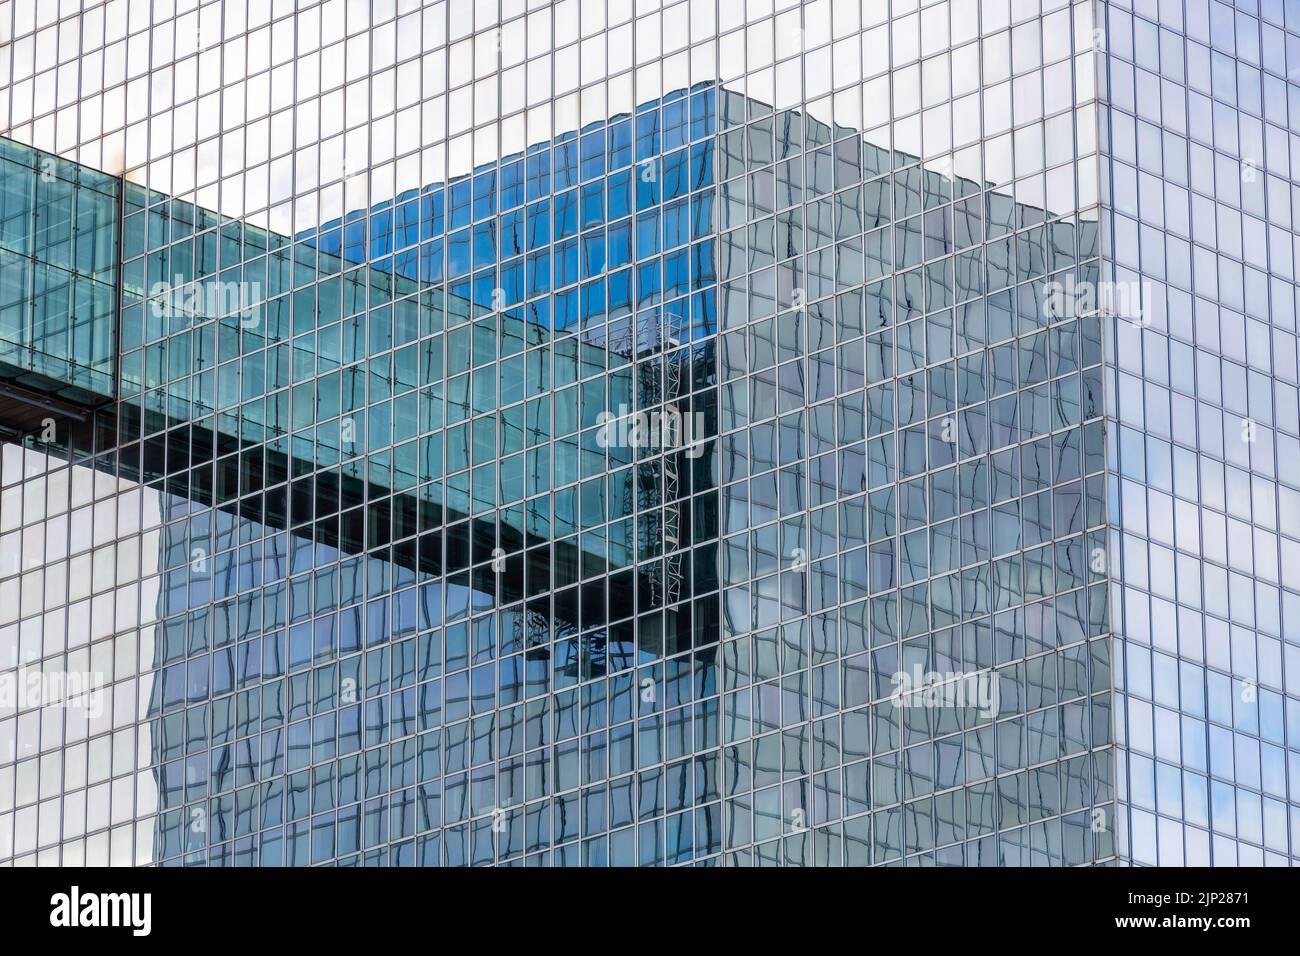 Wechselseitig reflektierte Bilder von zwei Glastürmen, die durch einen Gang miteinander verbunden sind. Stockfoto